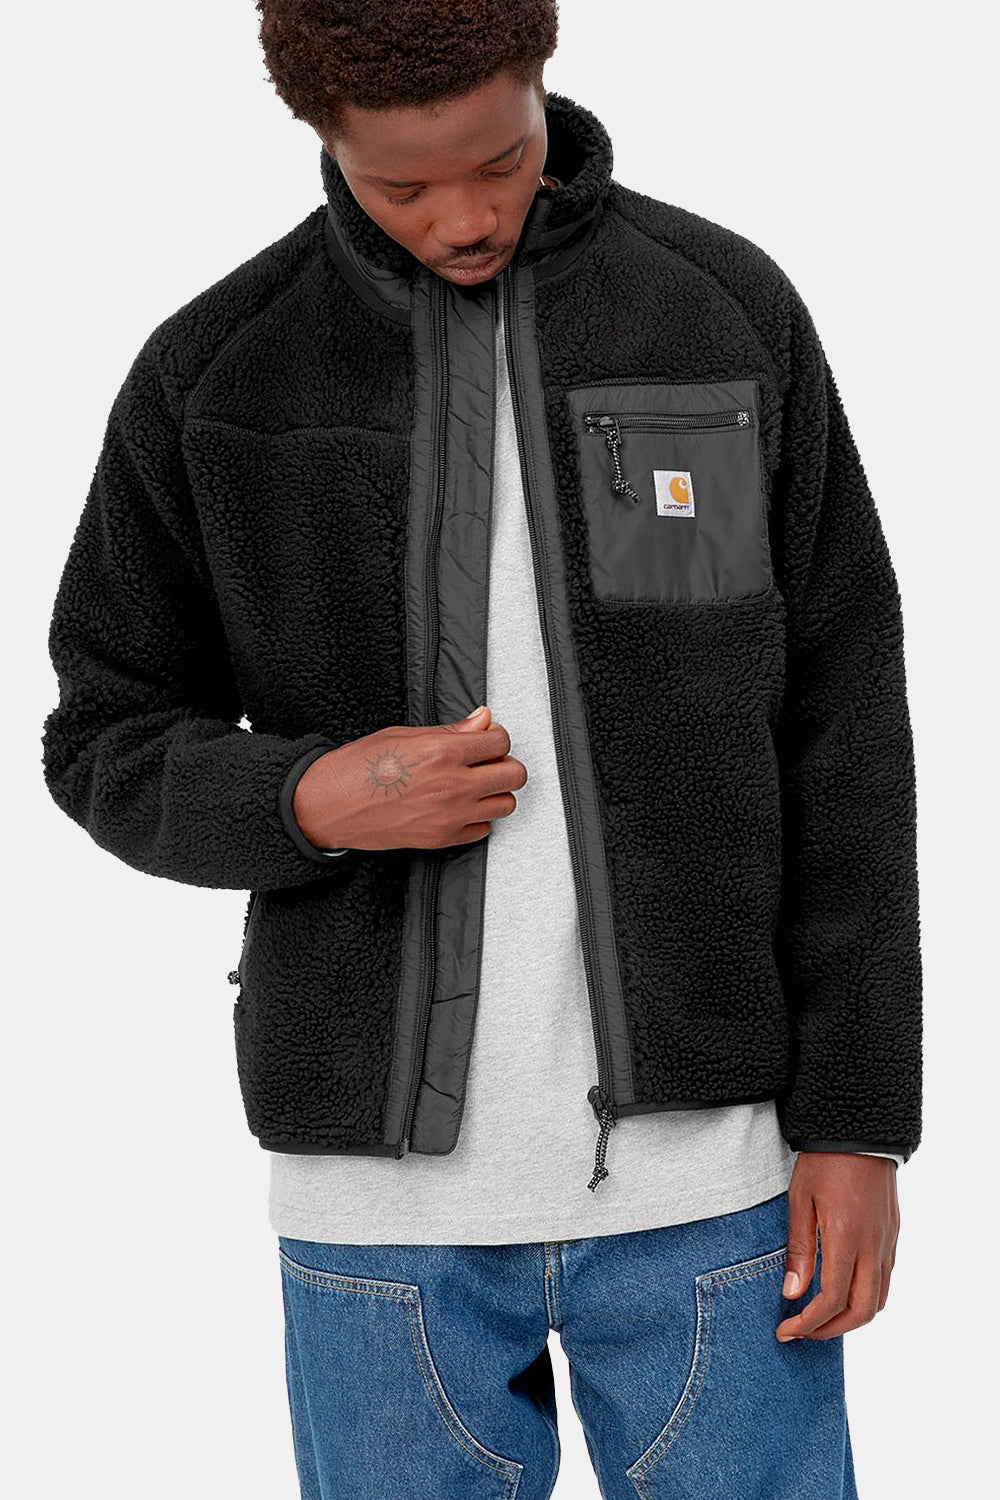 Carhartt WIP Prentis Liner Jacket (Black)